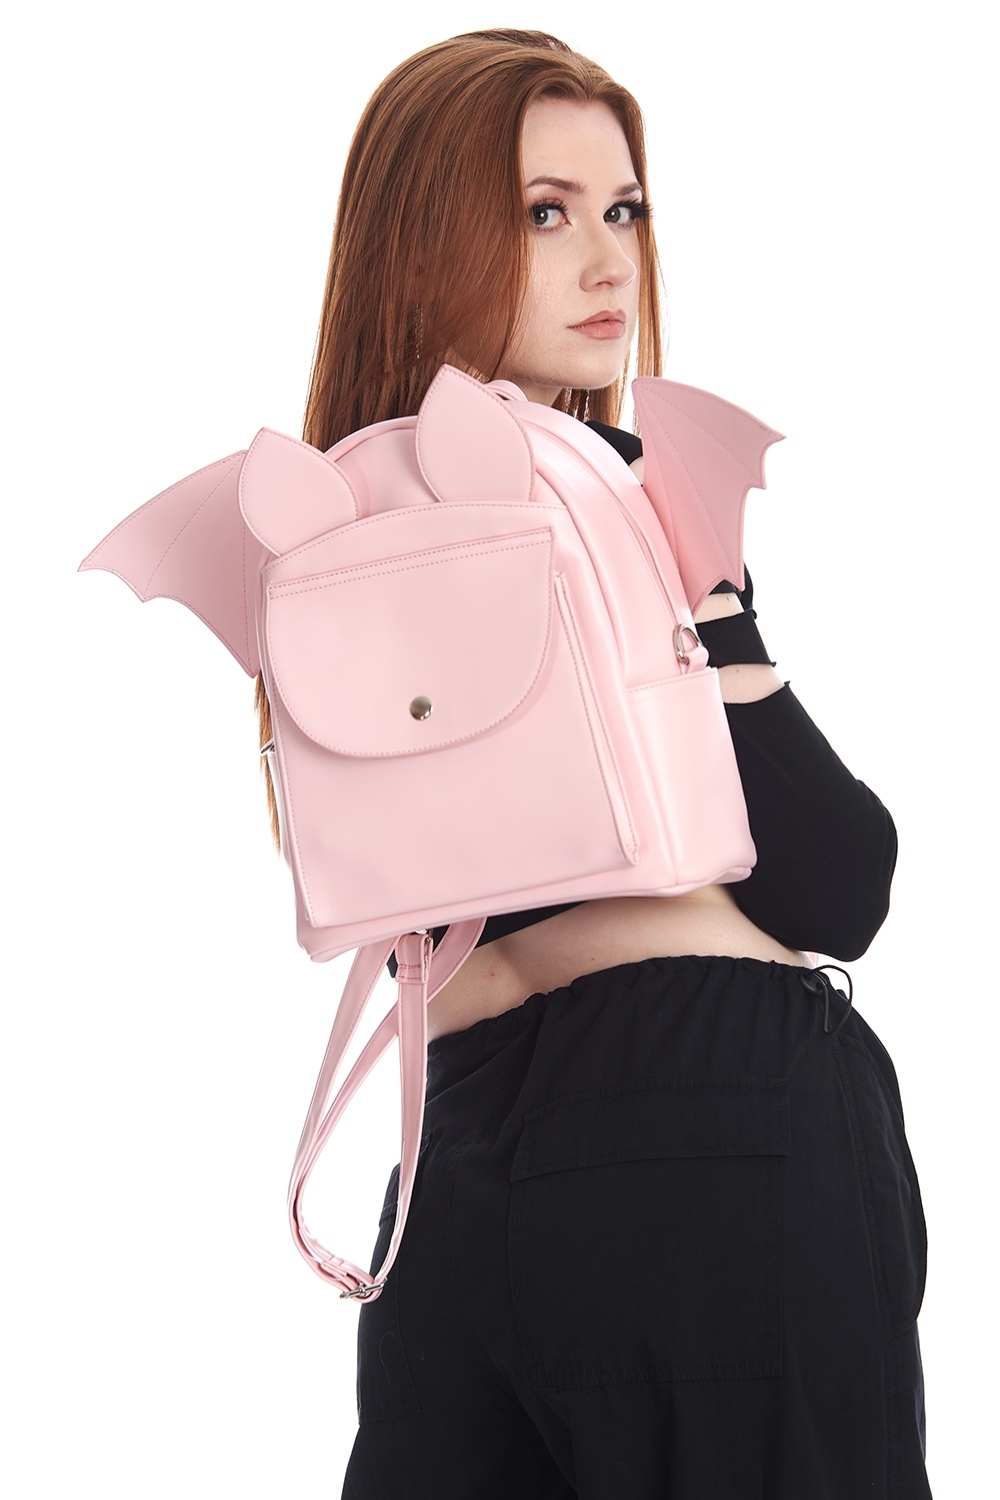 Pink bat backpack